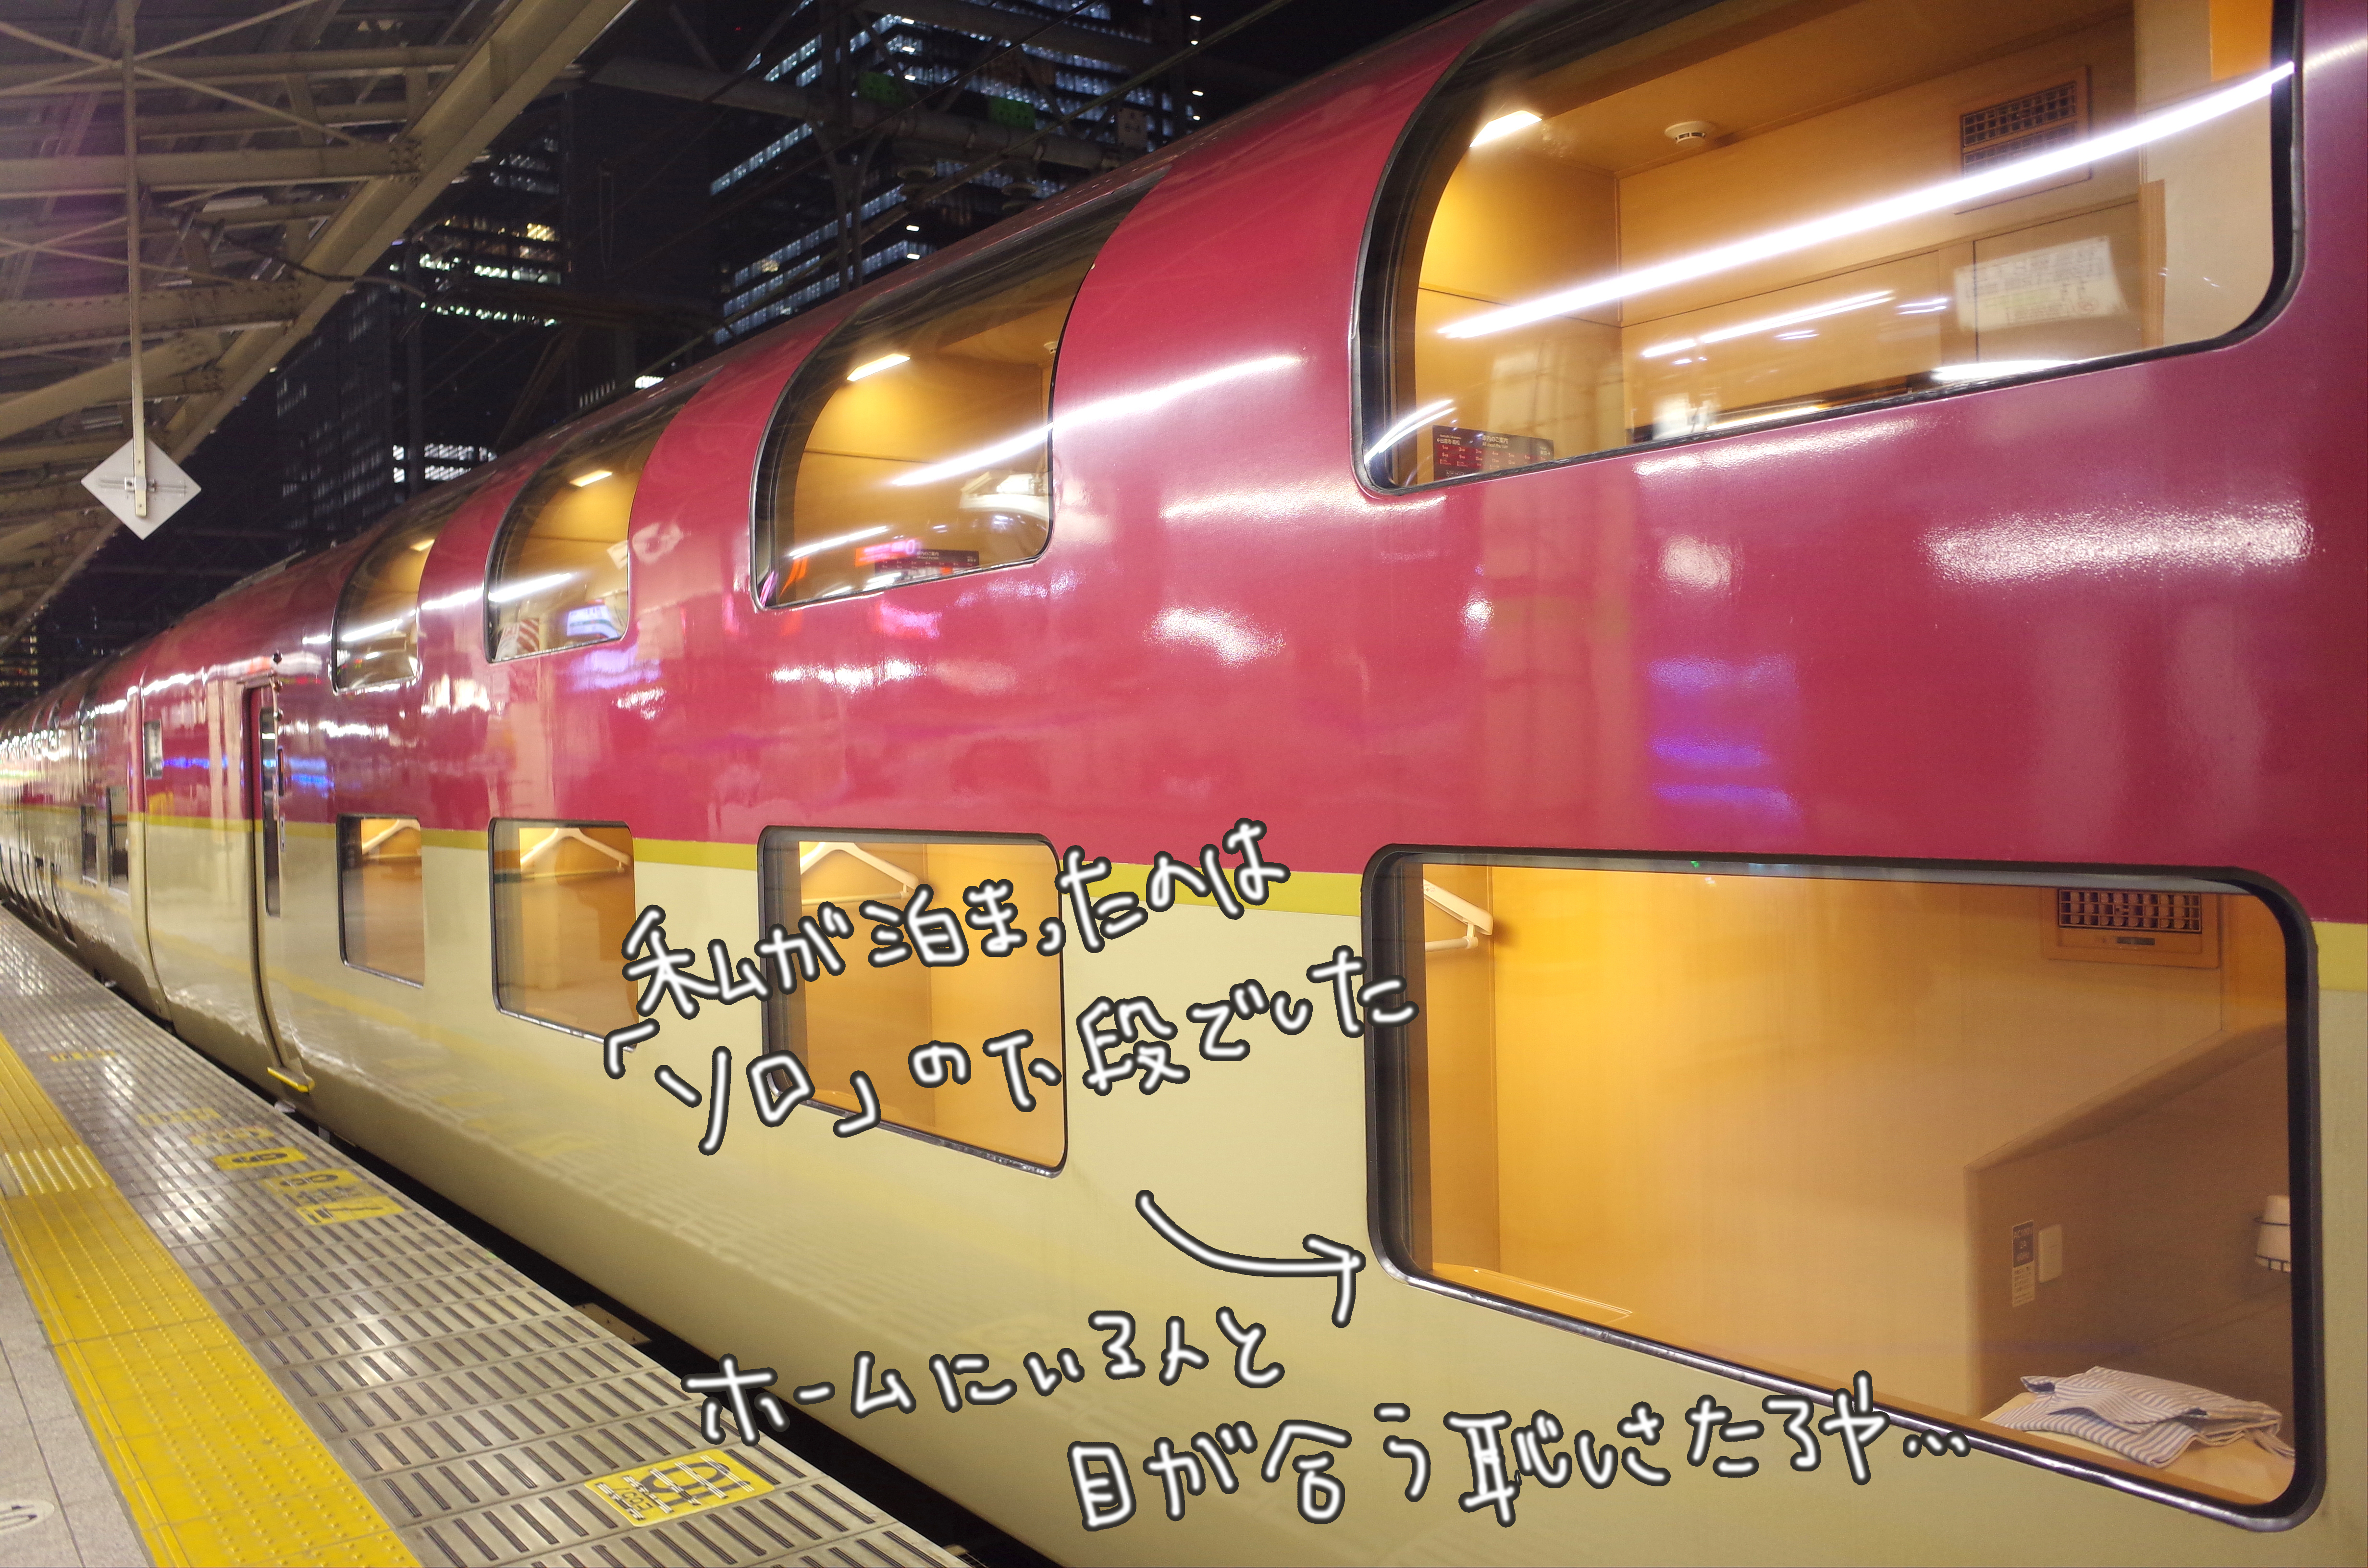 特急 寝台 日本国内を走るJR・私鉄の特急列車・寝台列車を一覧でチェック